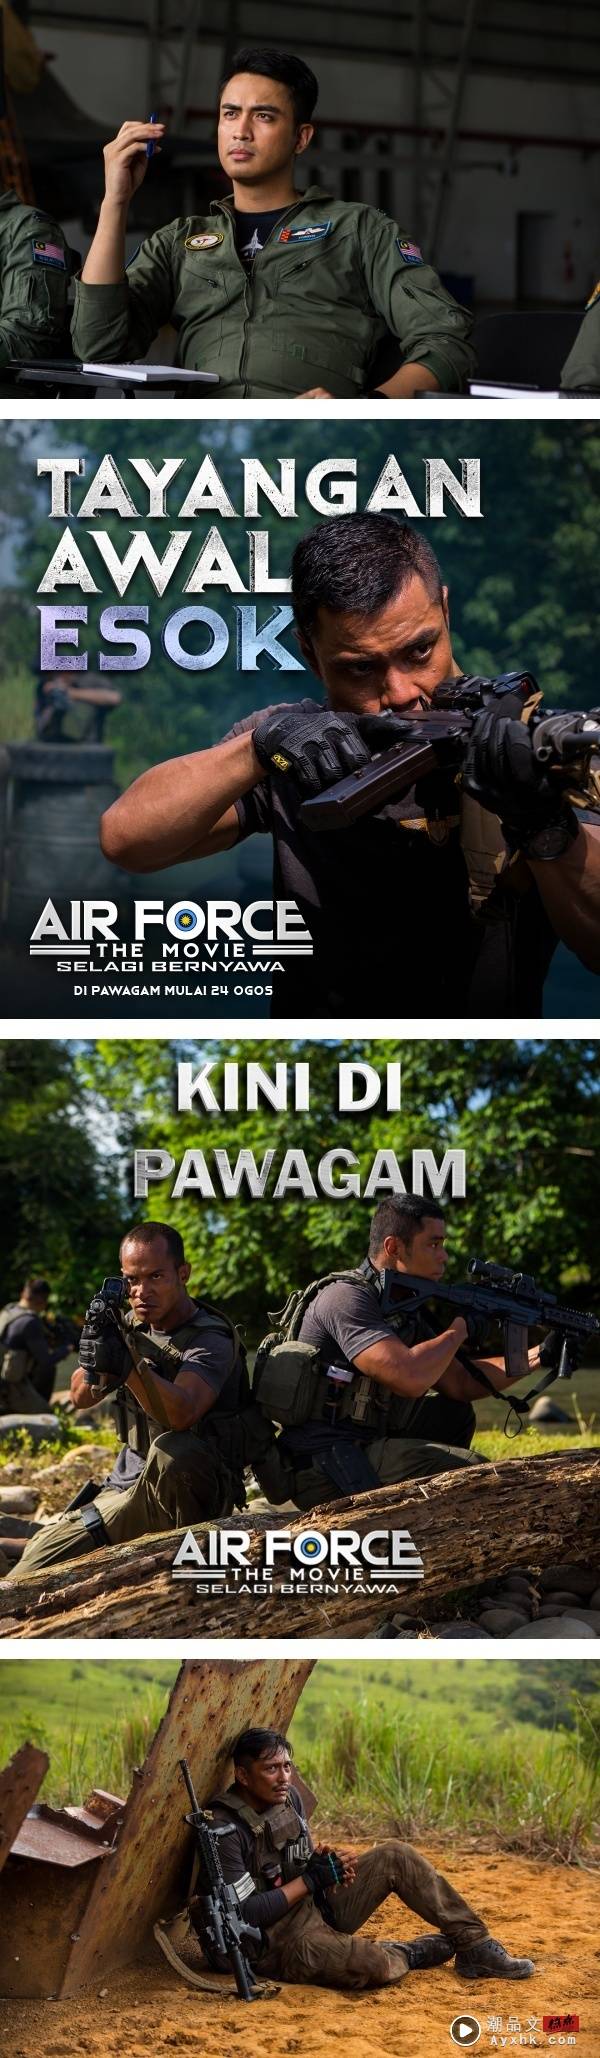 马来西亚首部空军题材电影《Air Force the Movie》5大看点！空战、动作画面几乎是实景拍摄！ 娱乐资讯 图3张